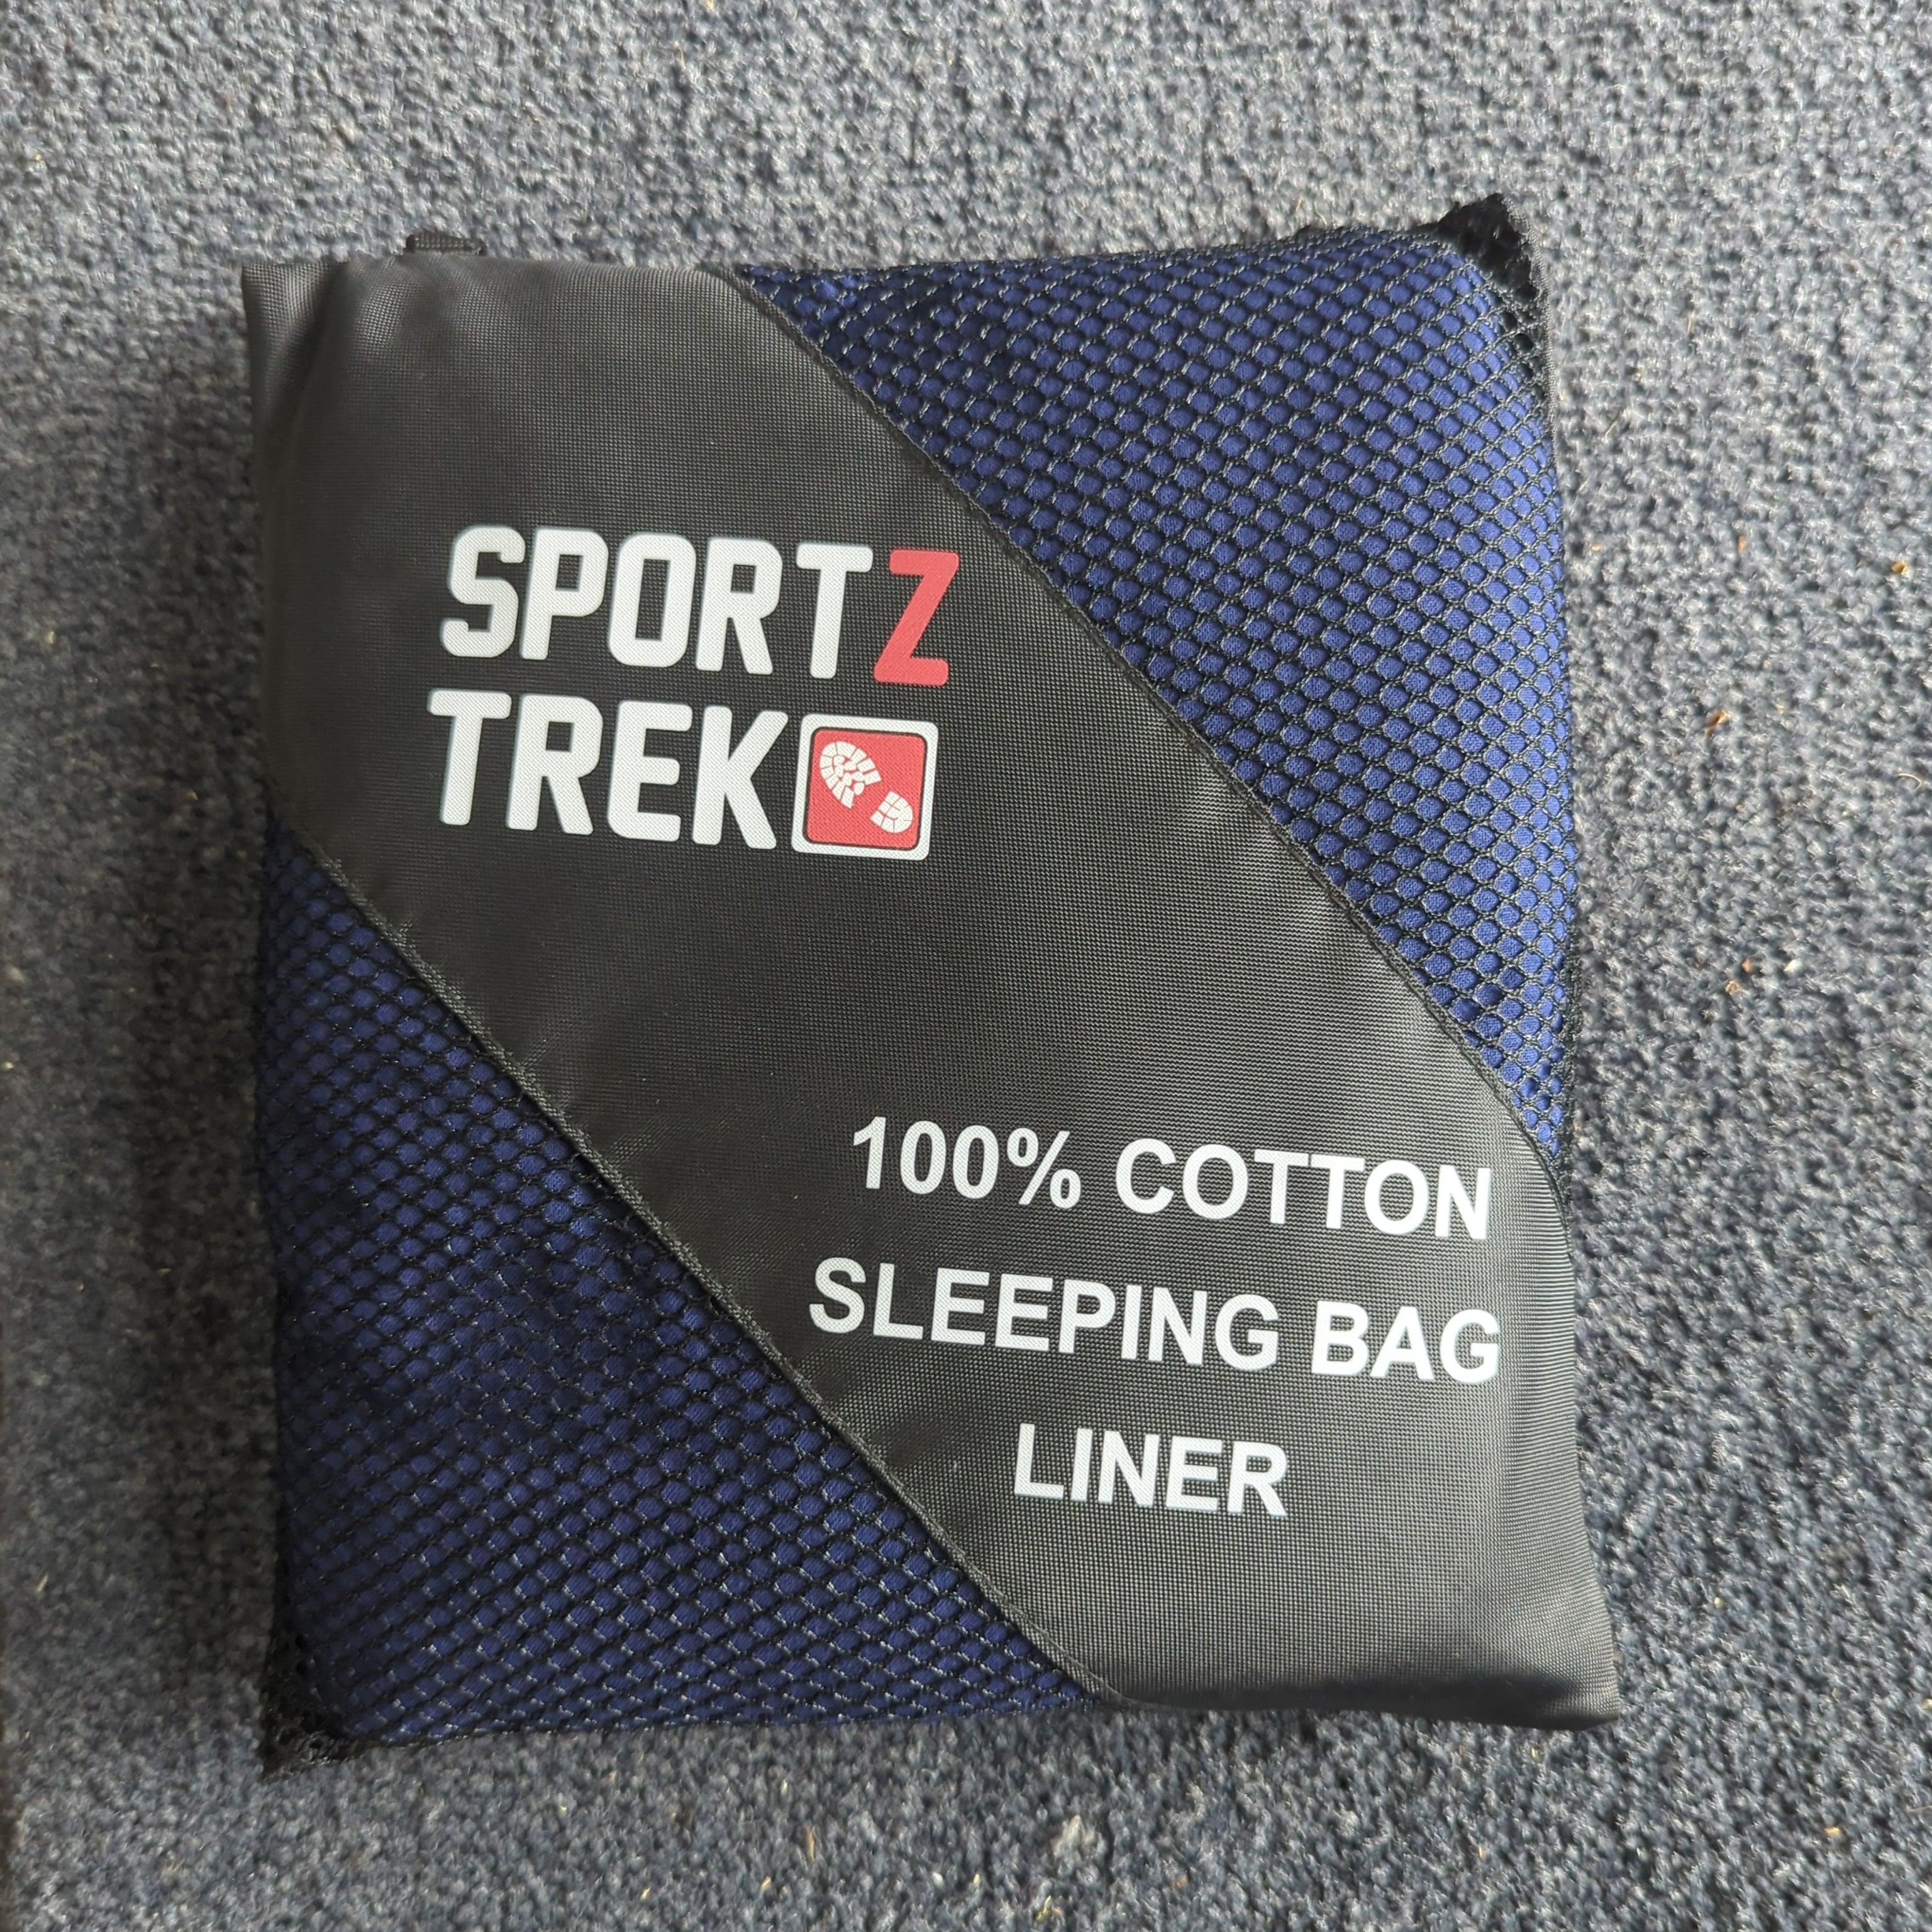 SportzTrek 100% Cotton Sleeping Bag Liner